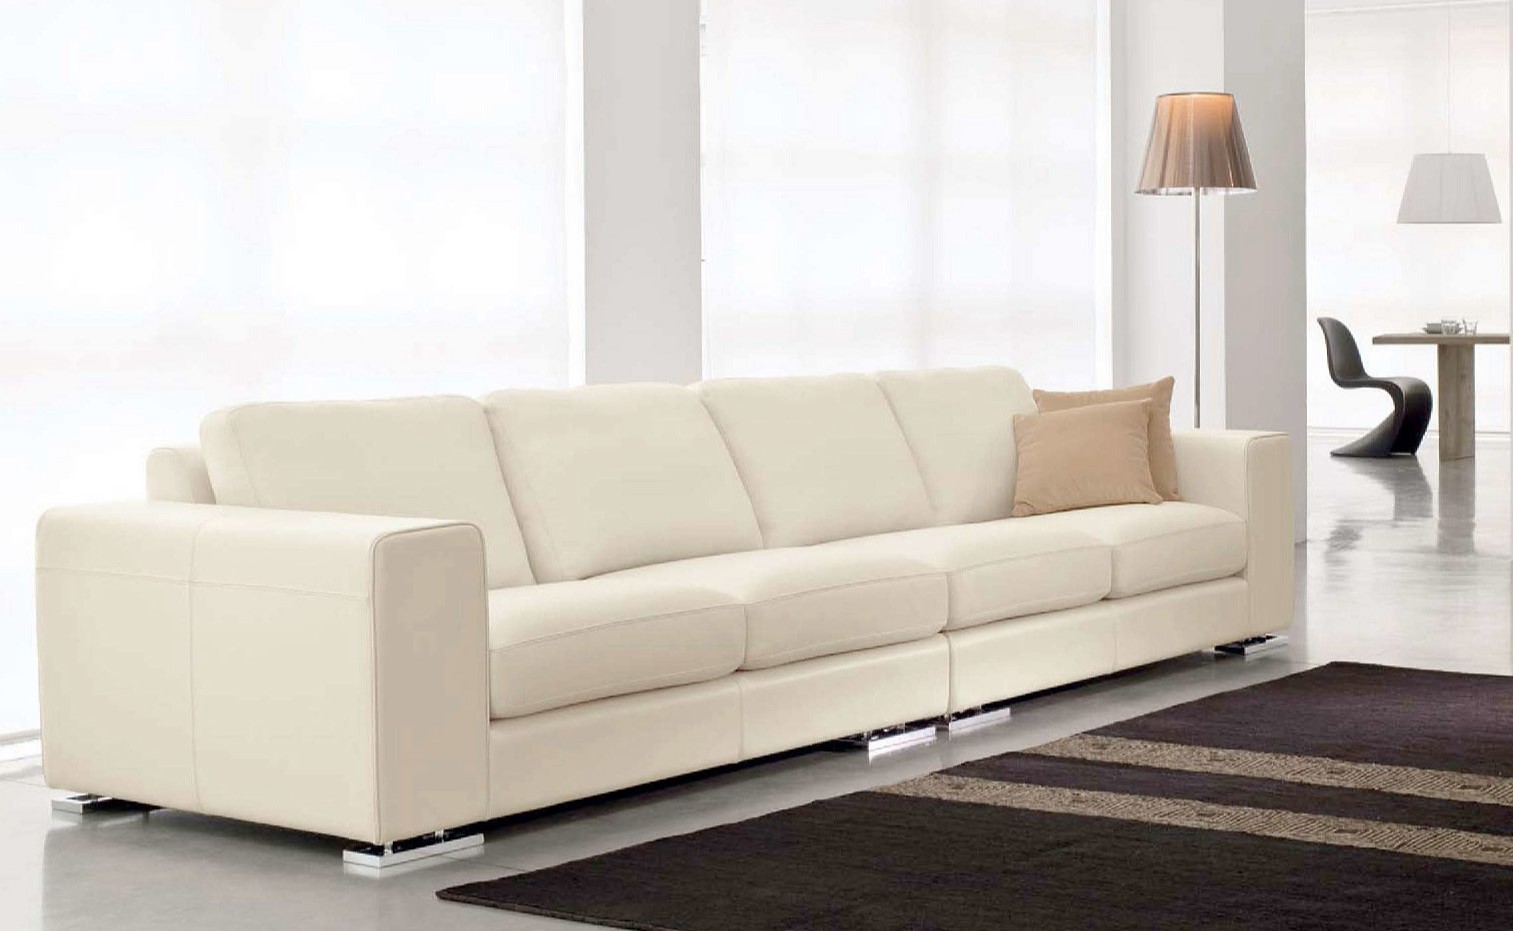 Кожаный диван с металлическими ножками идеально дополнит современную гостиную